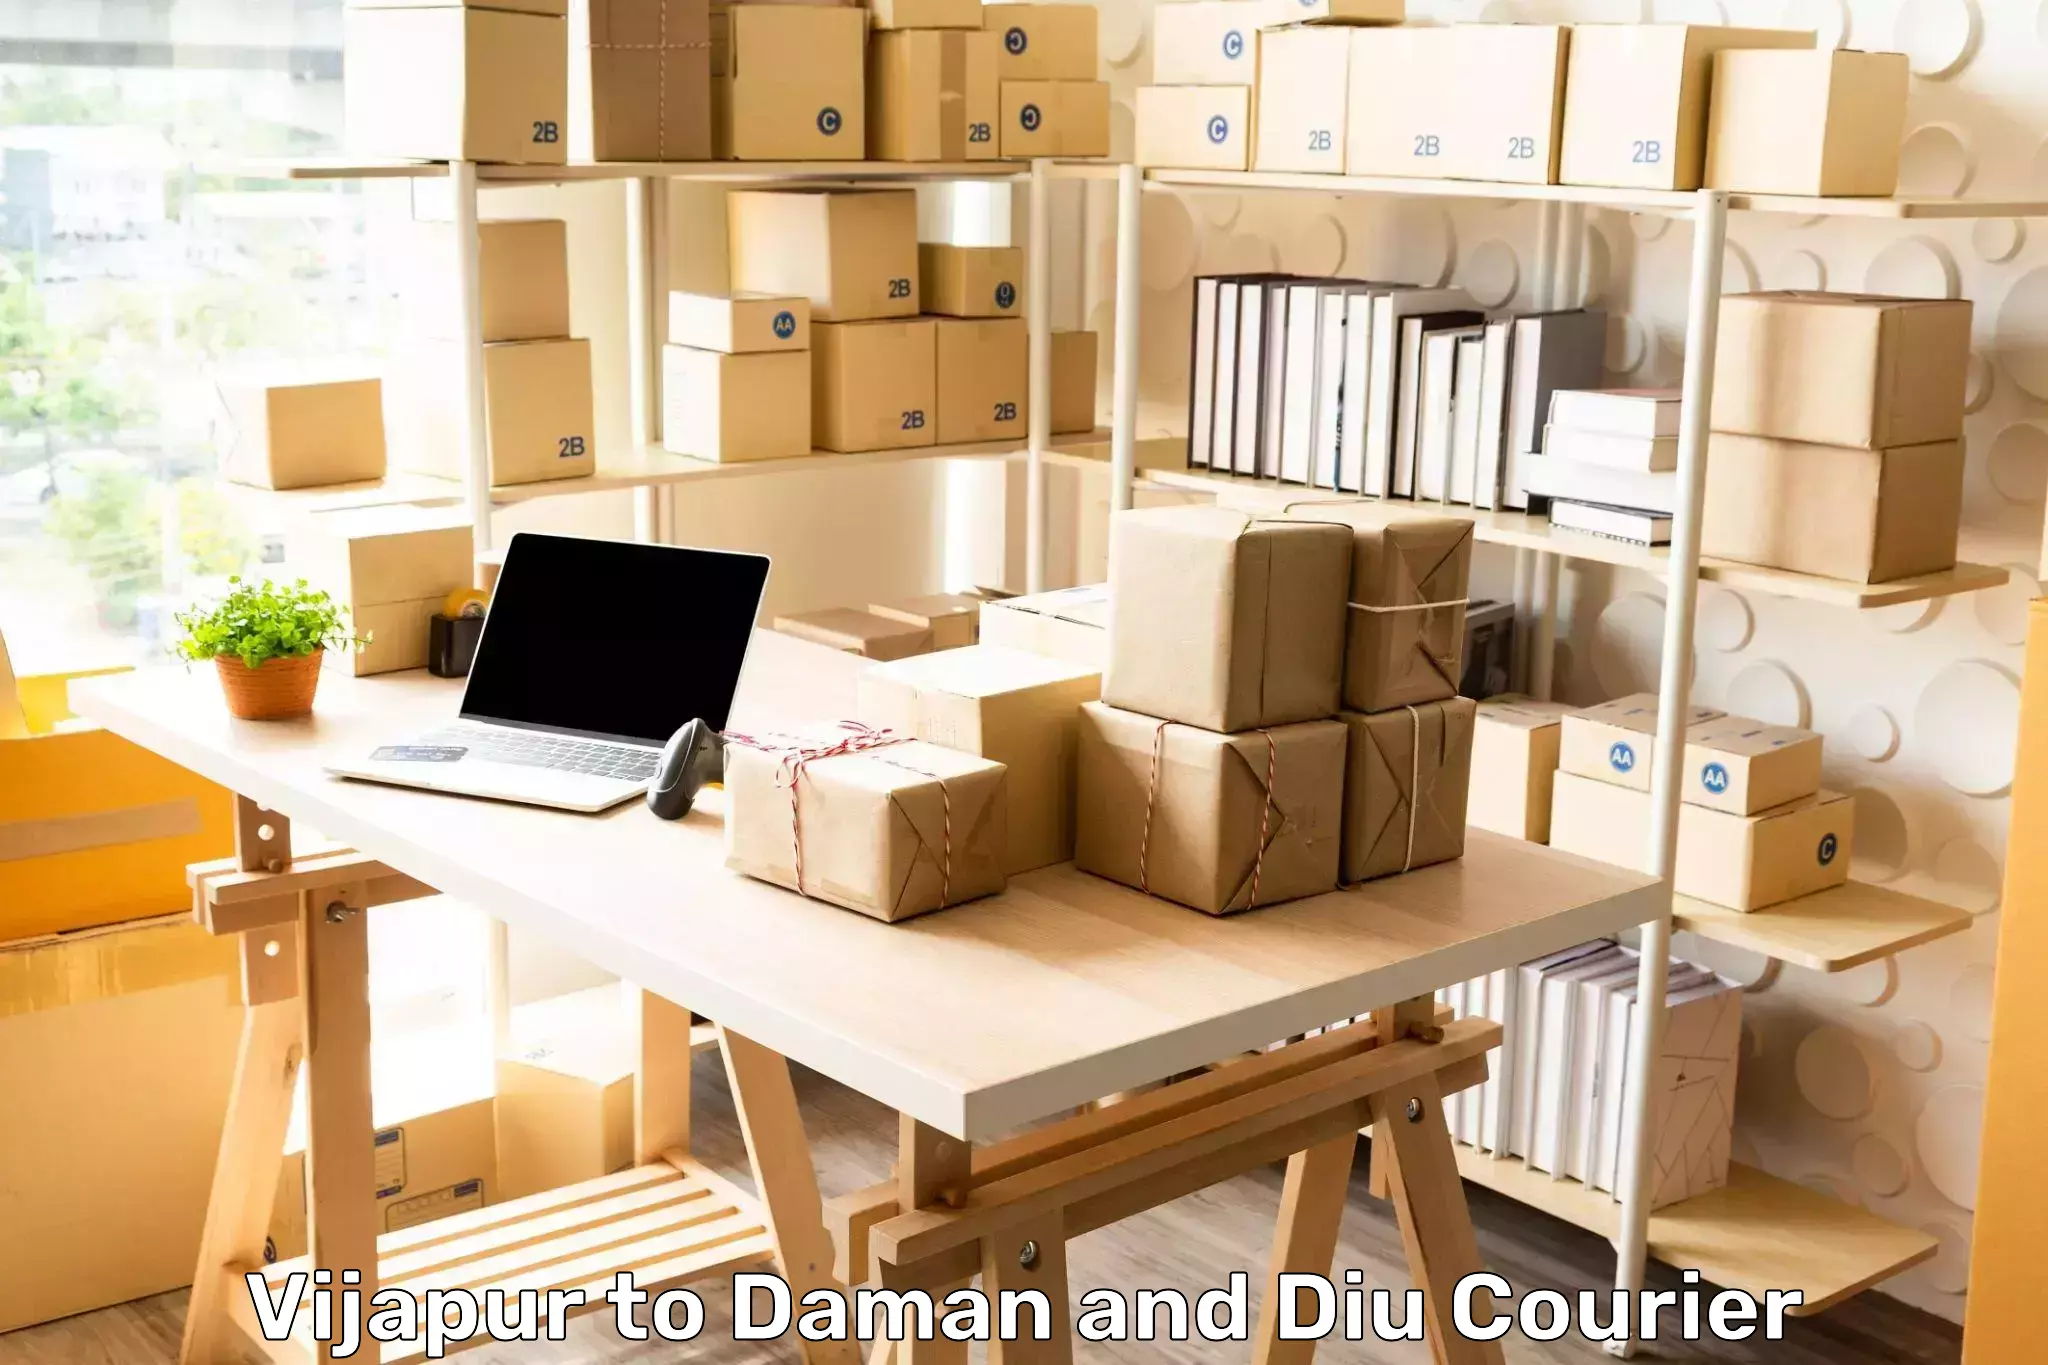 24/7 courier service Vijapur to Daman and Diu